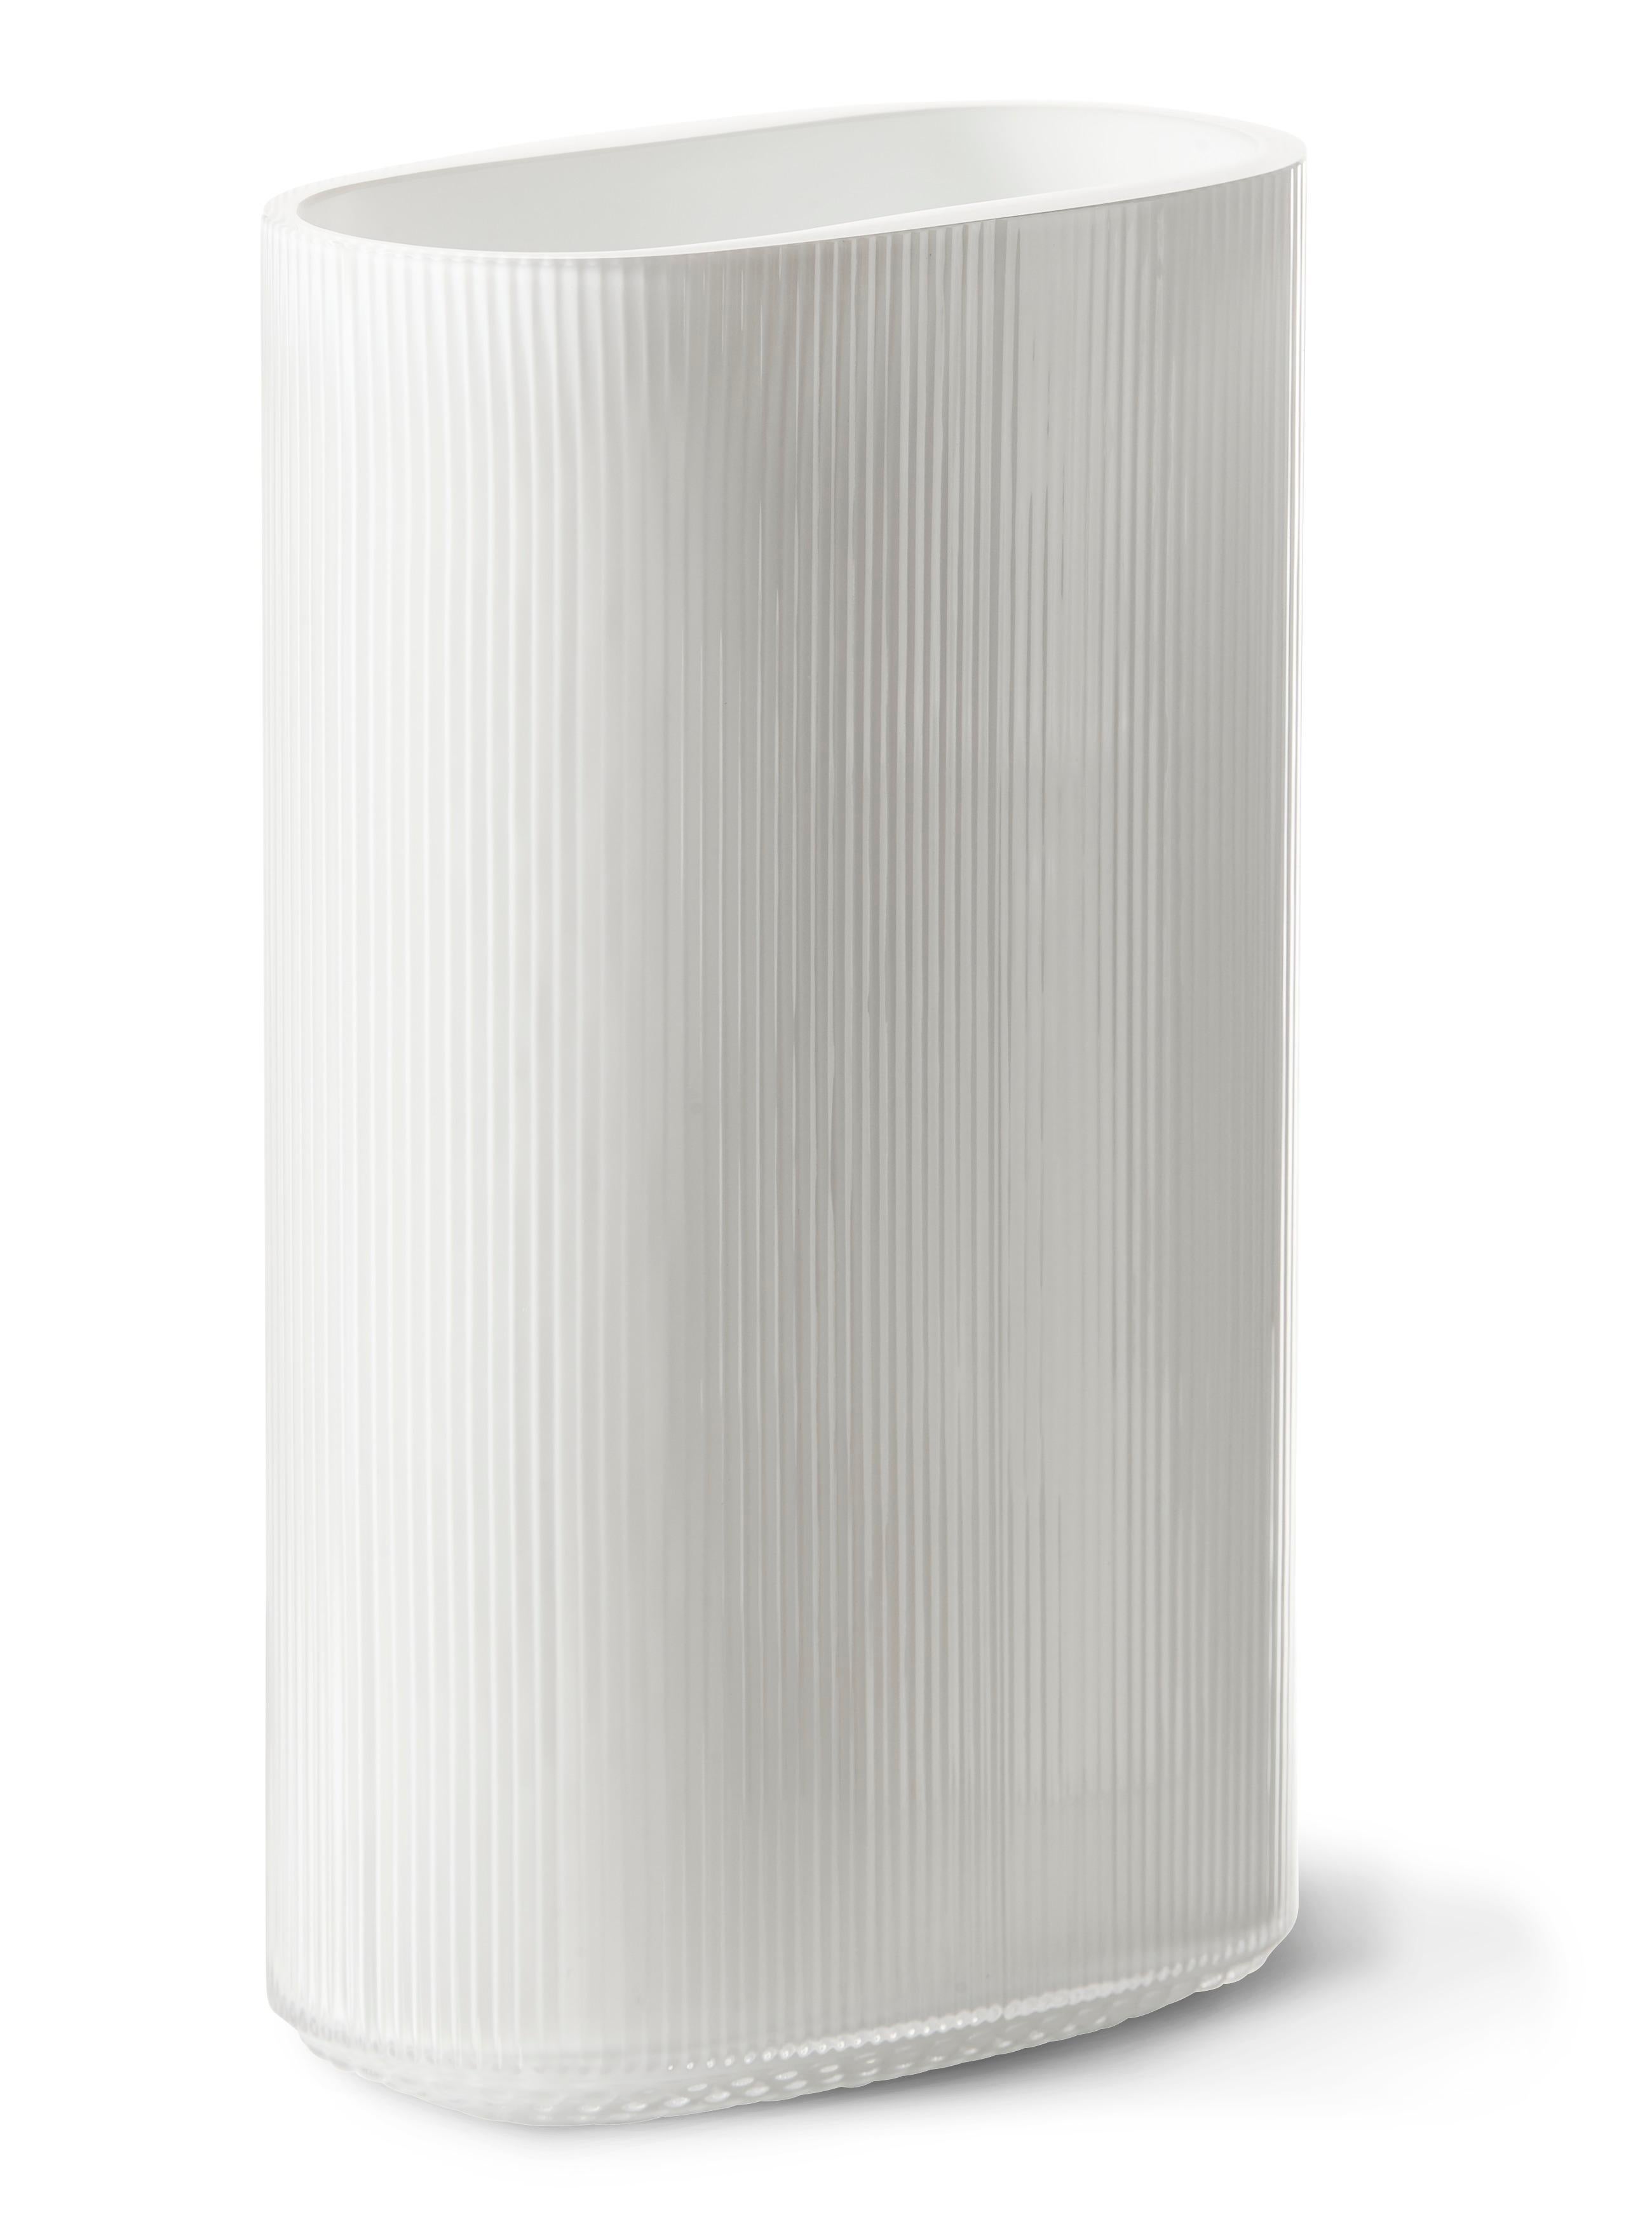 Magnifique vase ovale en verre opalin opaque soufflé à la bouche. Le vase arctique a été conçu à l'origine dans les années 1960 par le célèbre artiste verrier et orfèvre suédois Gunnar Cyrén et est maintenant fabriqué pour la première fois par Warm